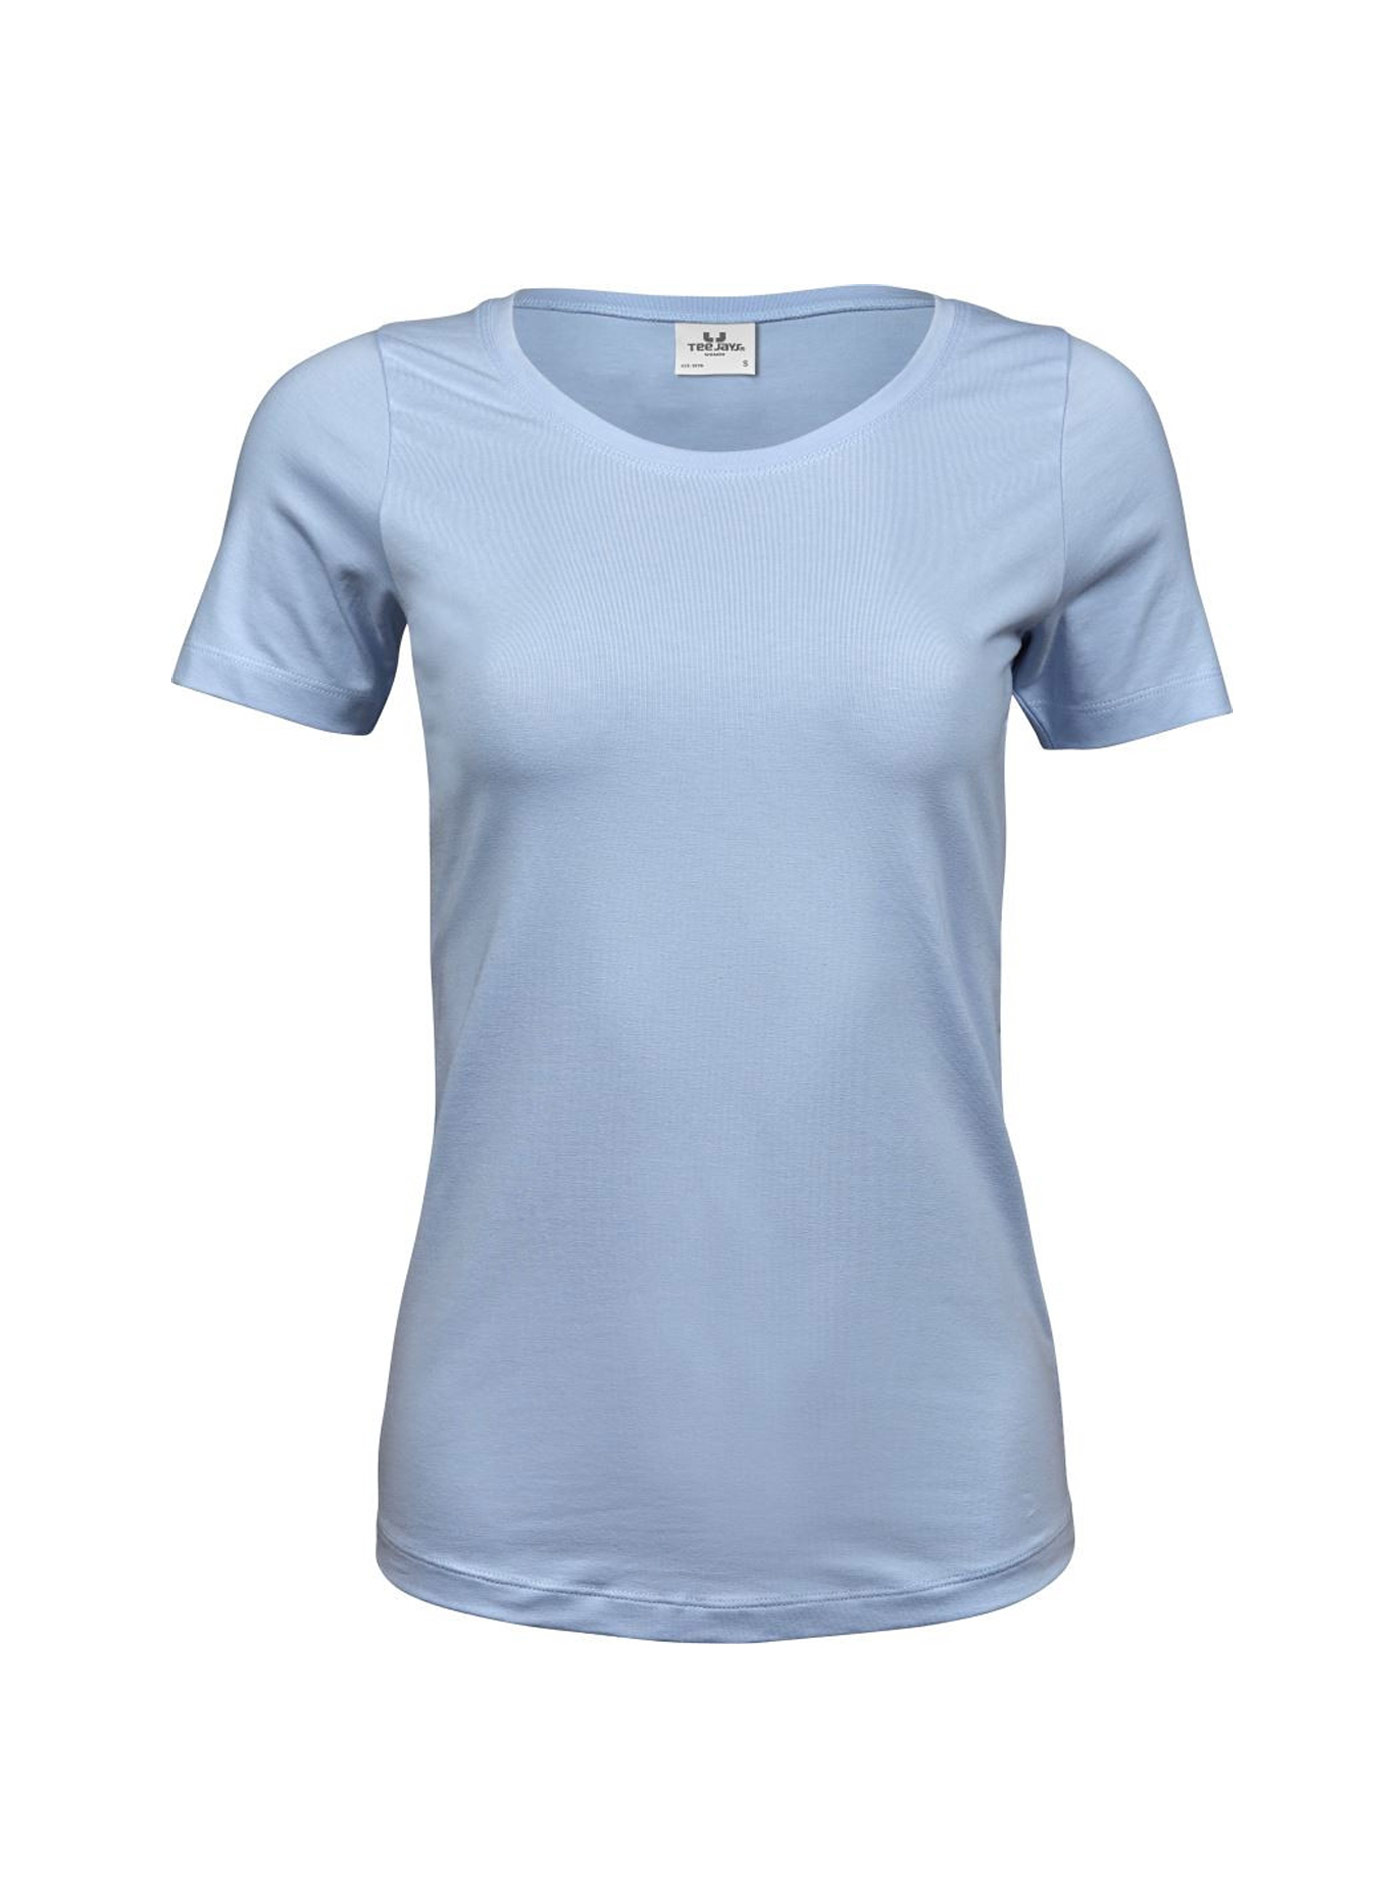 Dámské Stretch Tee tričko Tee Jays - světle modrá M